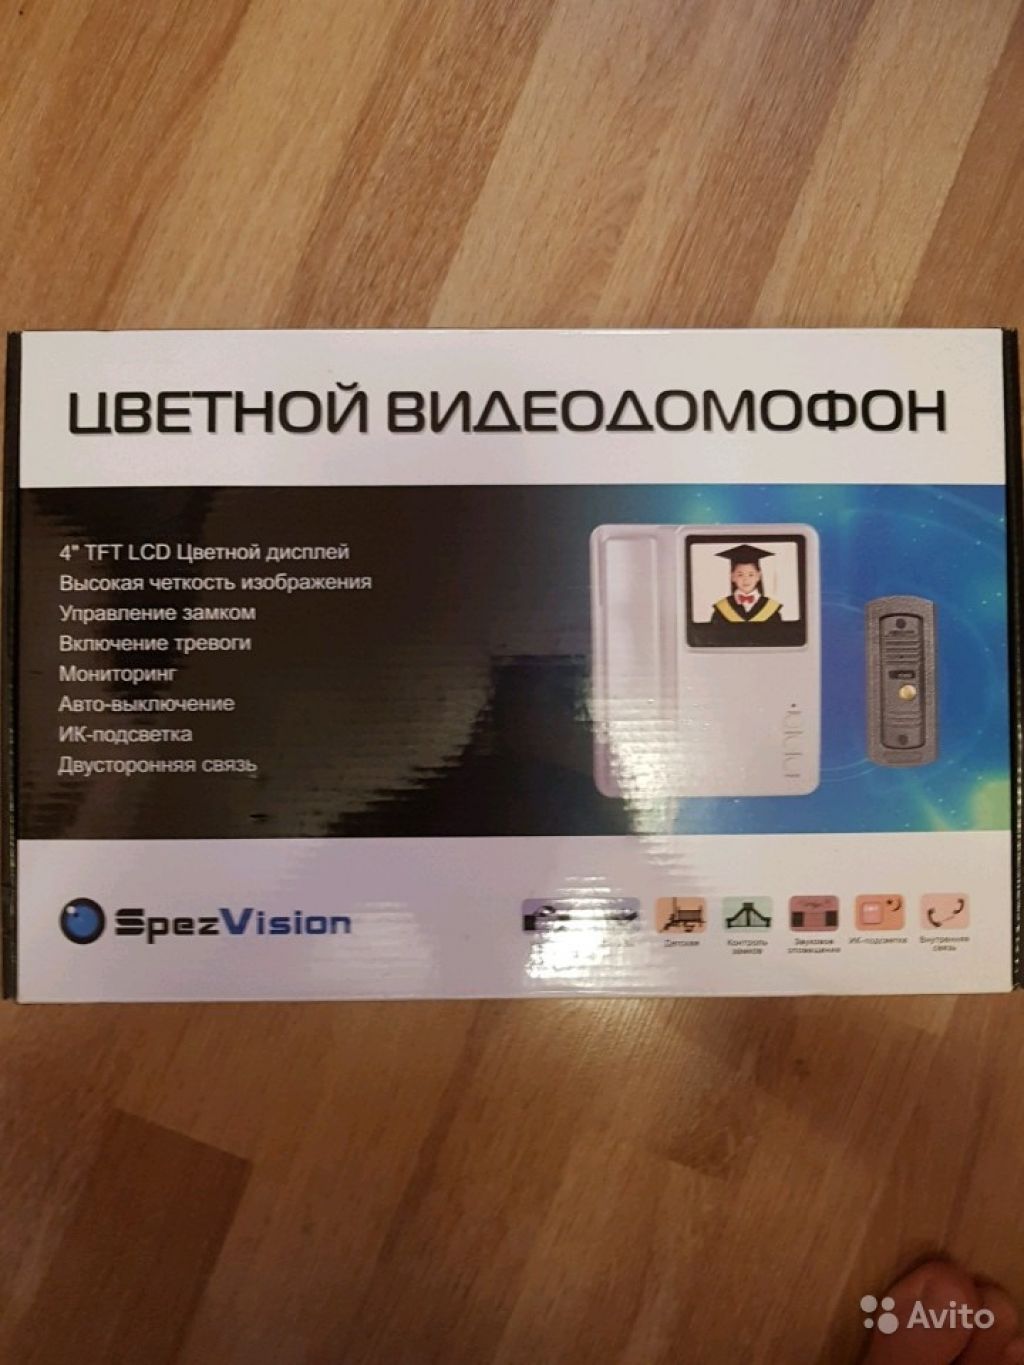 Цветной видеодомофон SpezVizion D440 новый в Москве. Фото 1